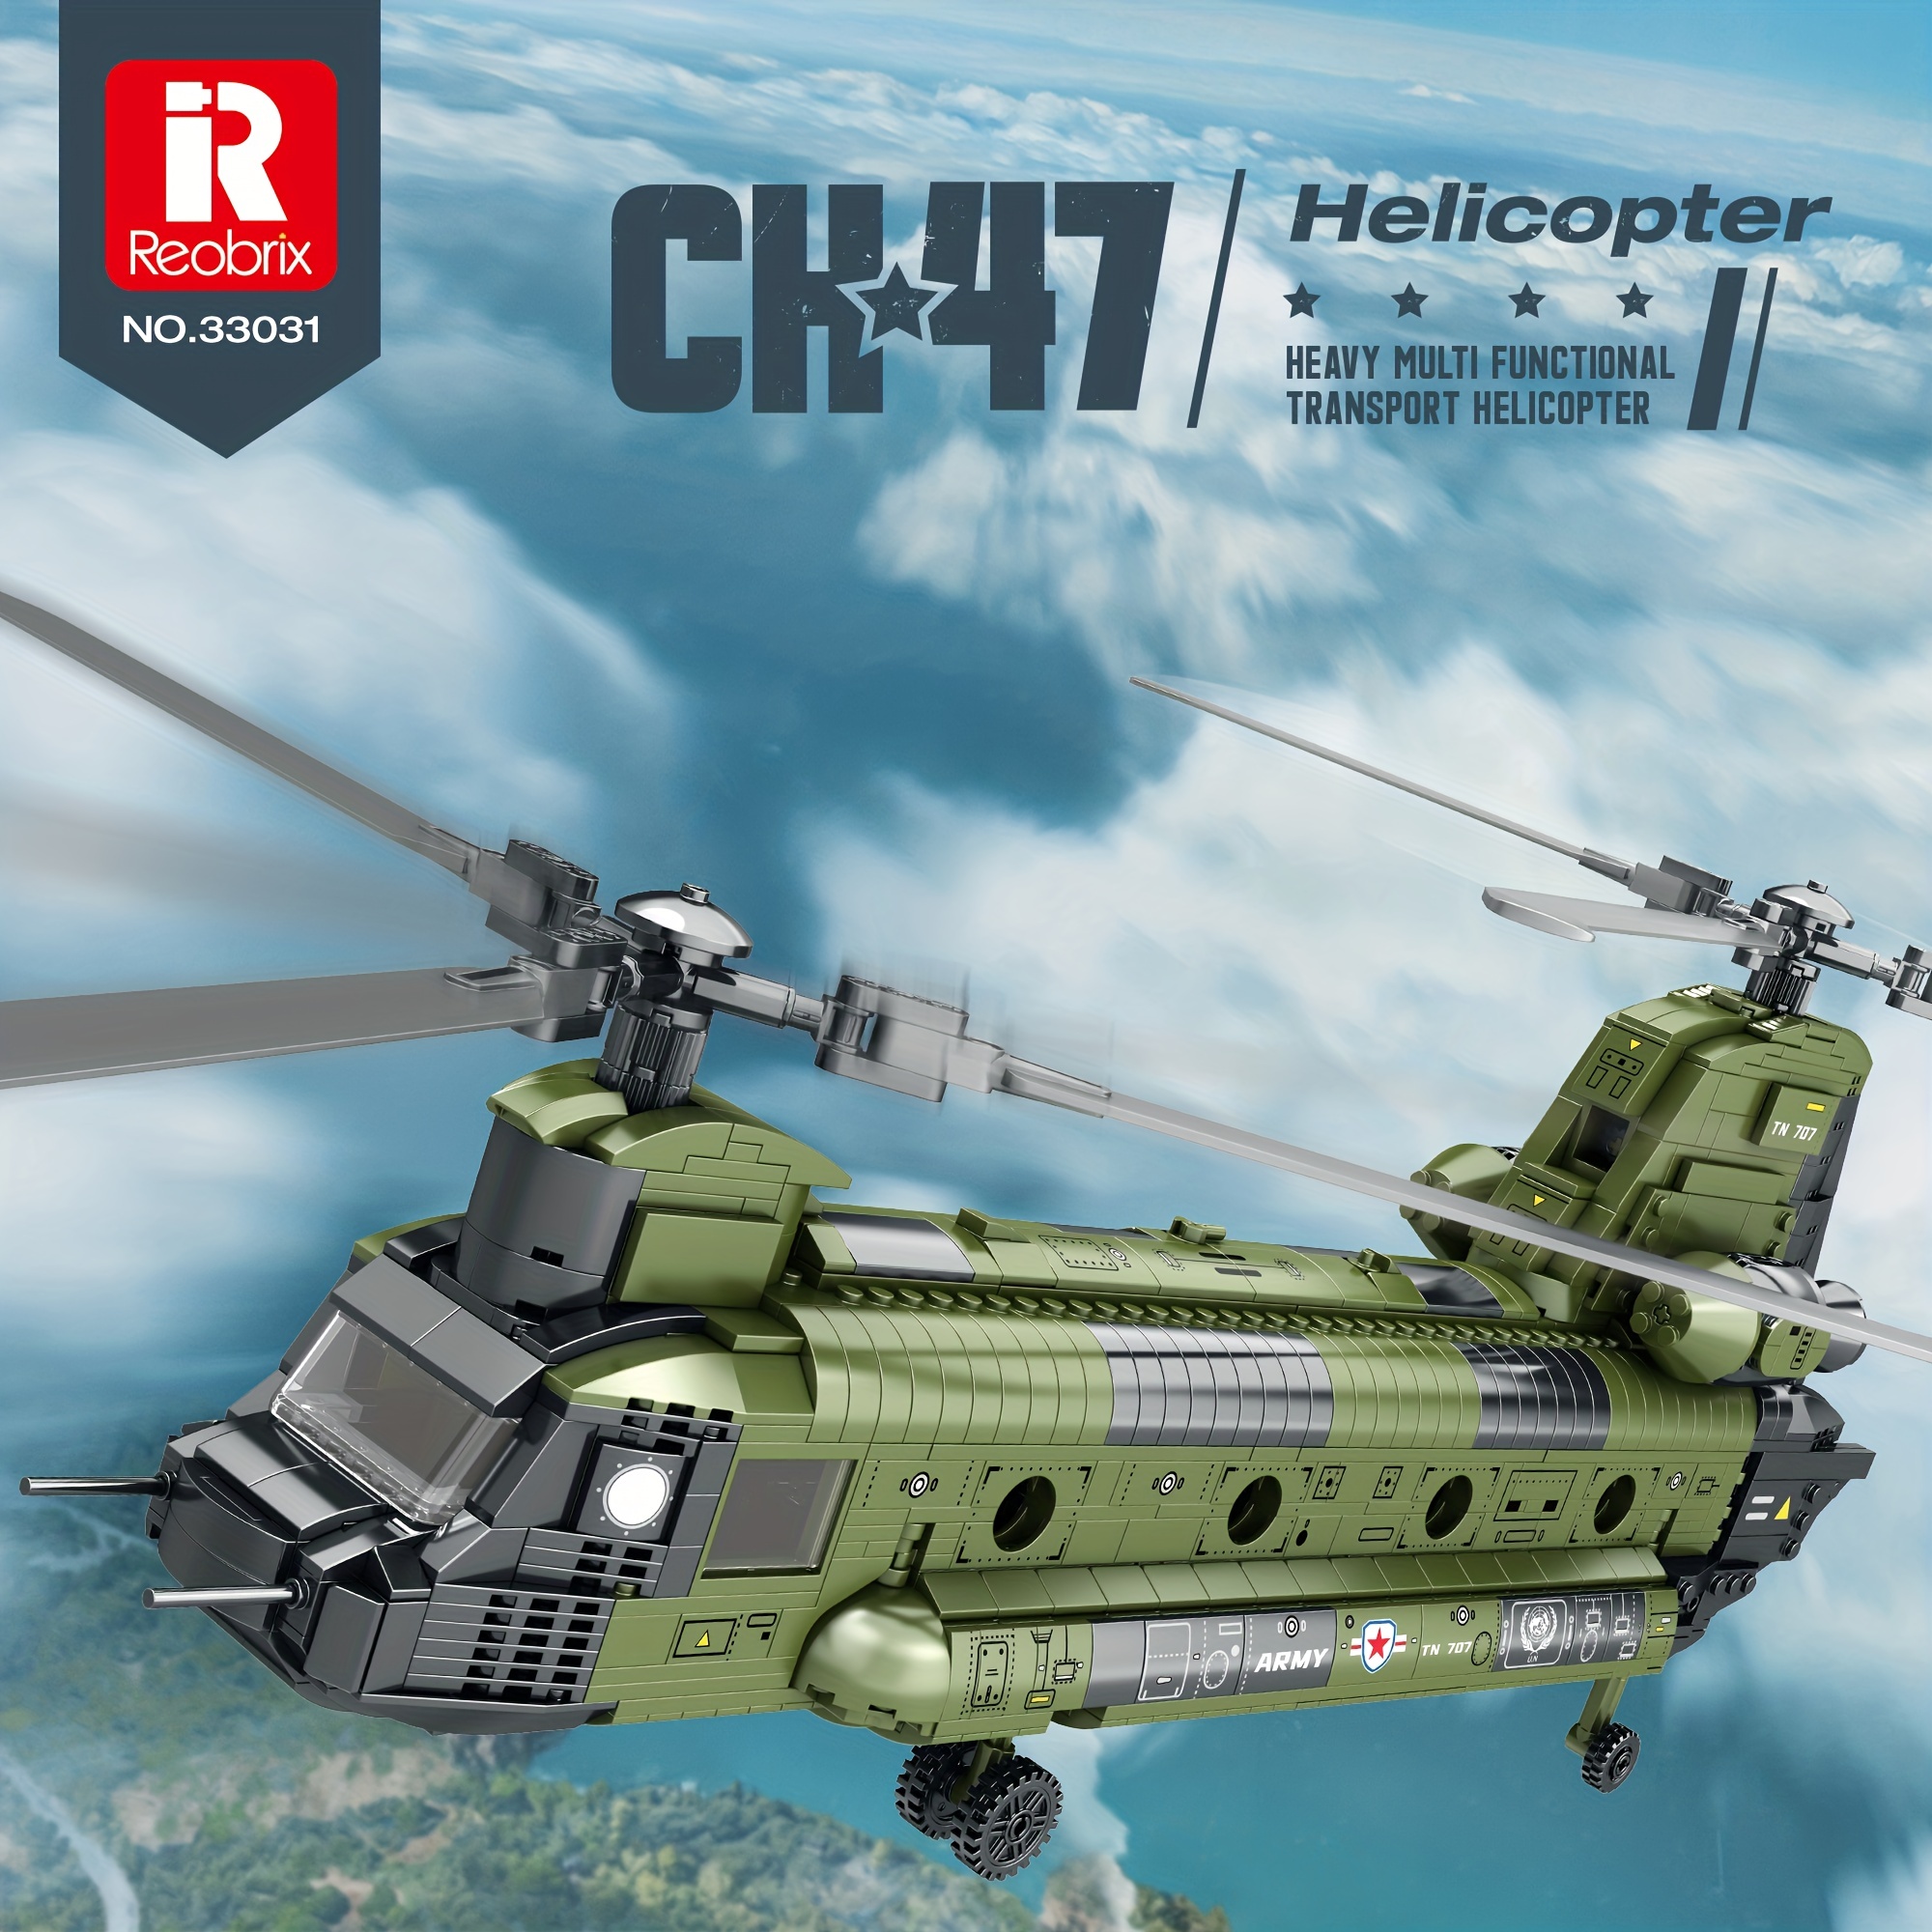 Mega Creative - Jouets de l'armée - Militaire - Avec hélicoptère